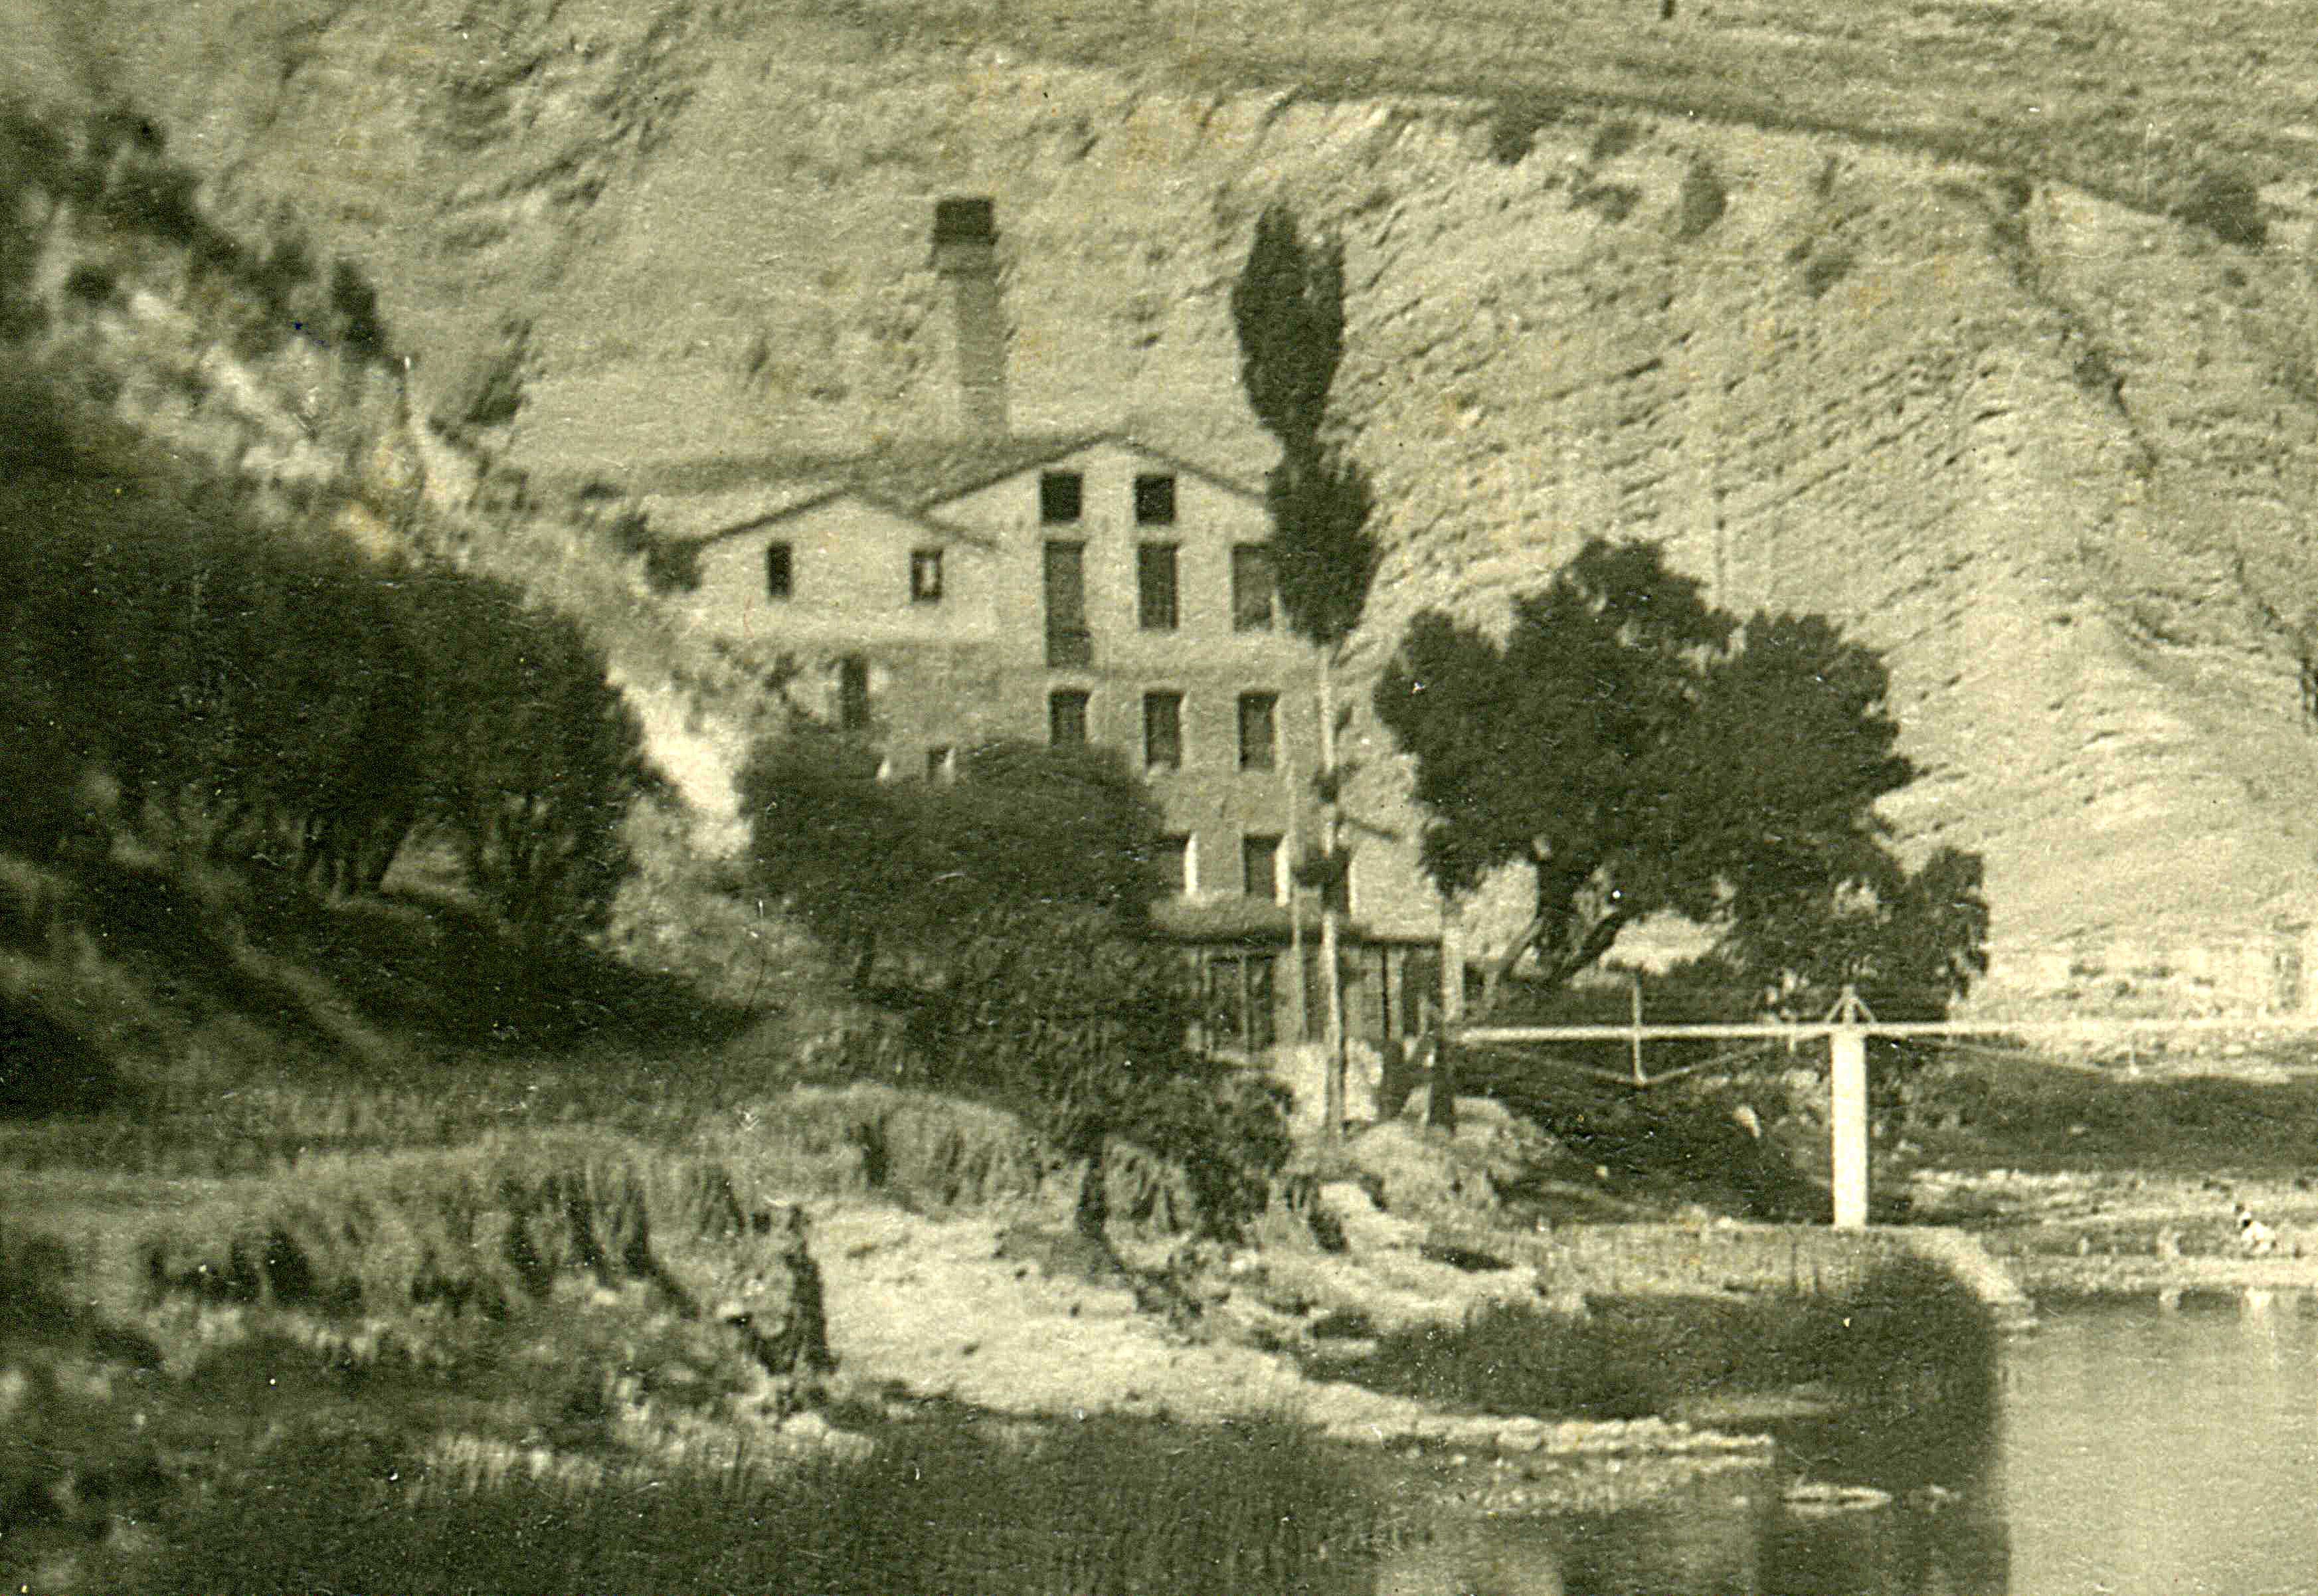 Any 1915 - Imatge de la FÃ brica Vella, a l'entorn del barri de Sant Jaume (font: llibre 'FÃ briques de riu' d'Albert FÃ brega, Ramon Fons i Ester Llobet).